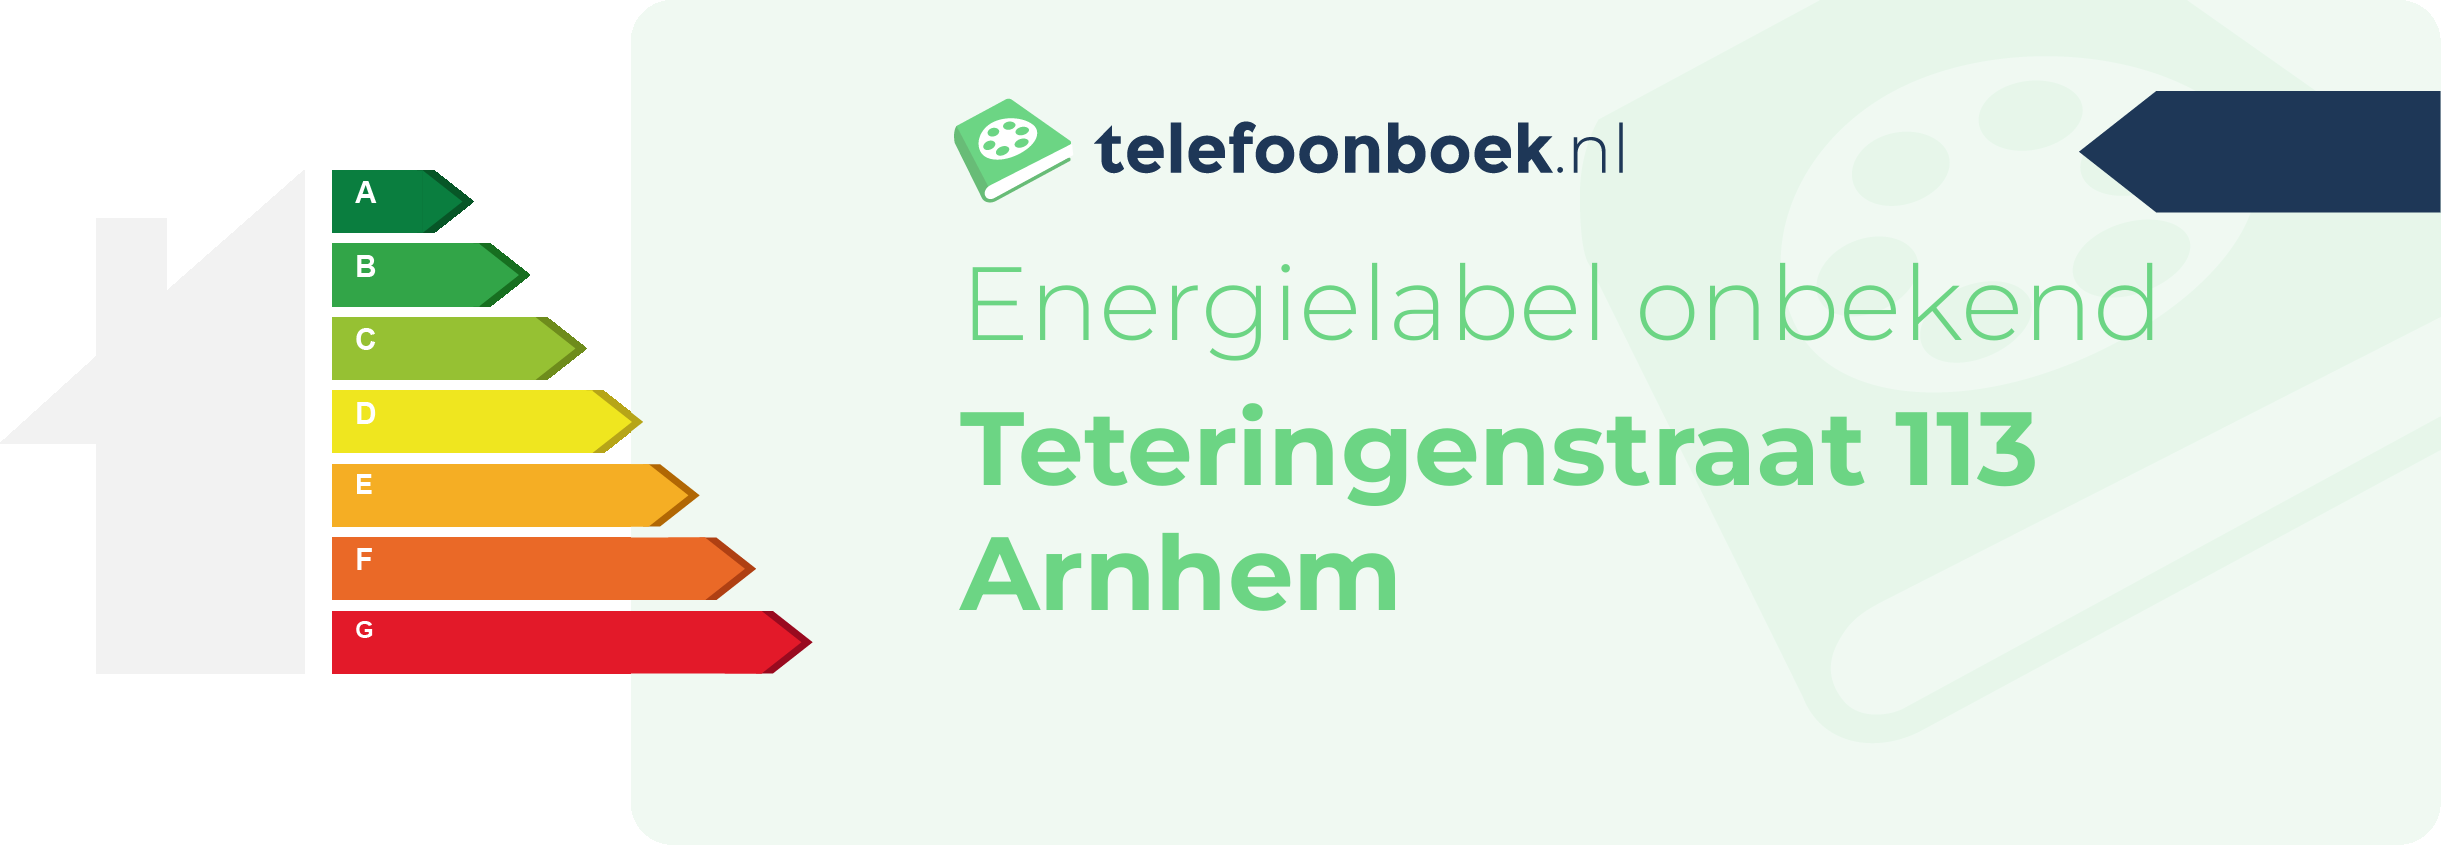 Energielabel Teteringenstraat 113 Arnhem